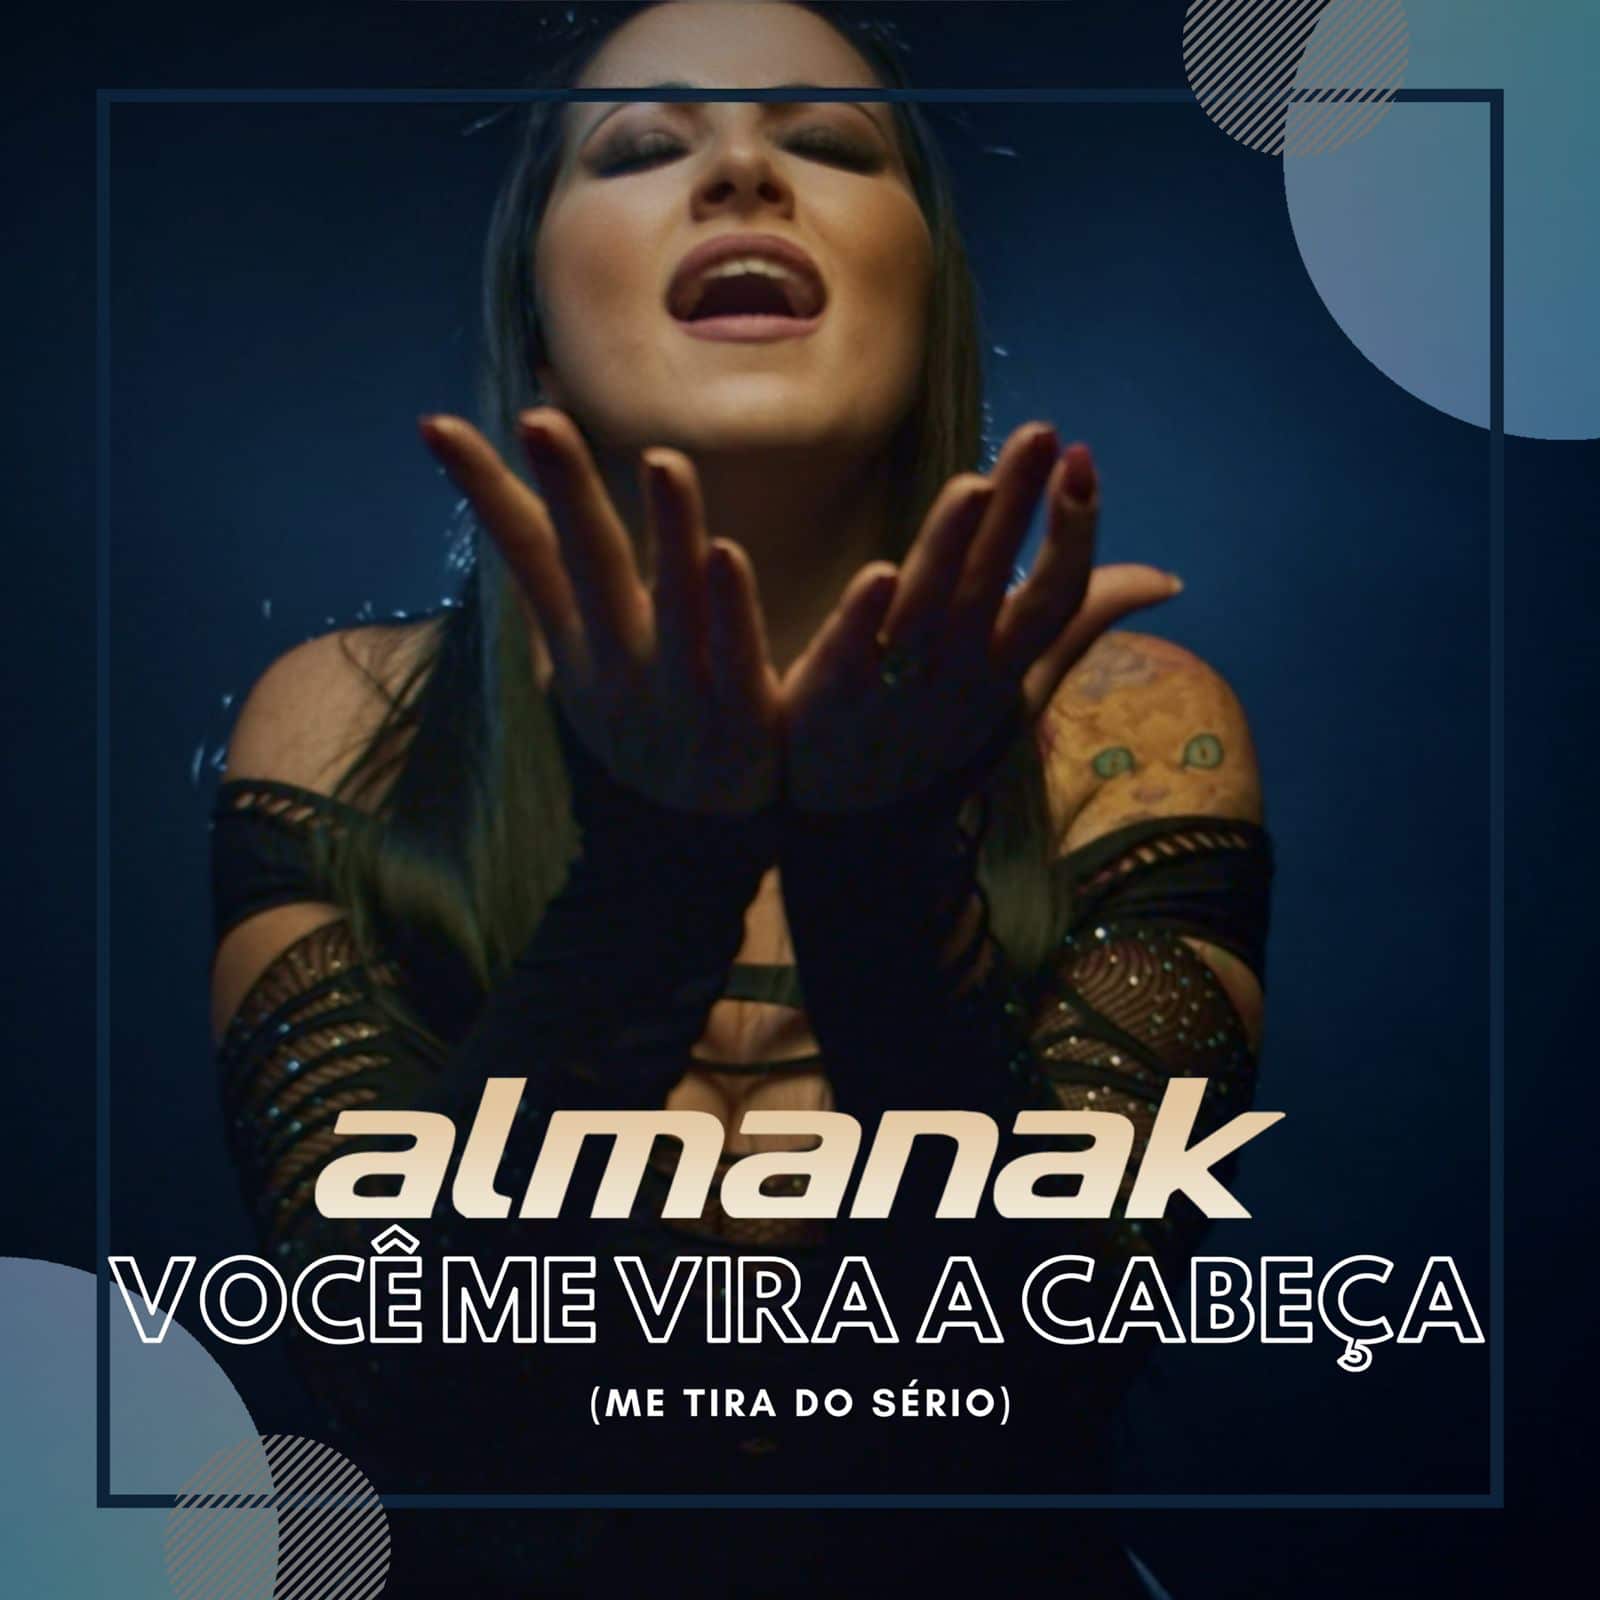 revistaprosaversoearte.com - Banda Almanak lança single 'Você me Vira a Cabeça', canção de Paulo Sérgio Valle e Francisco Roque